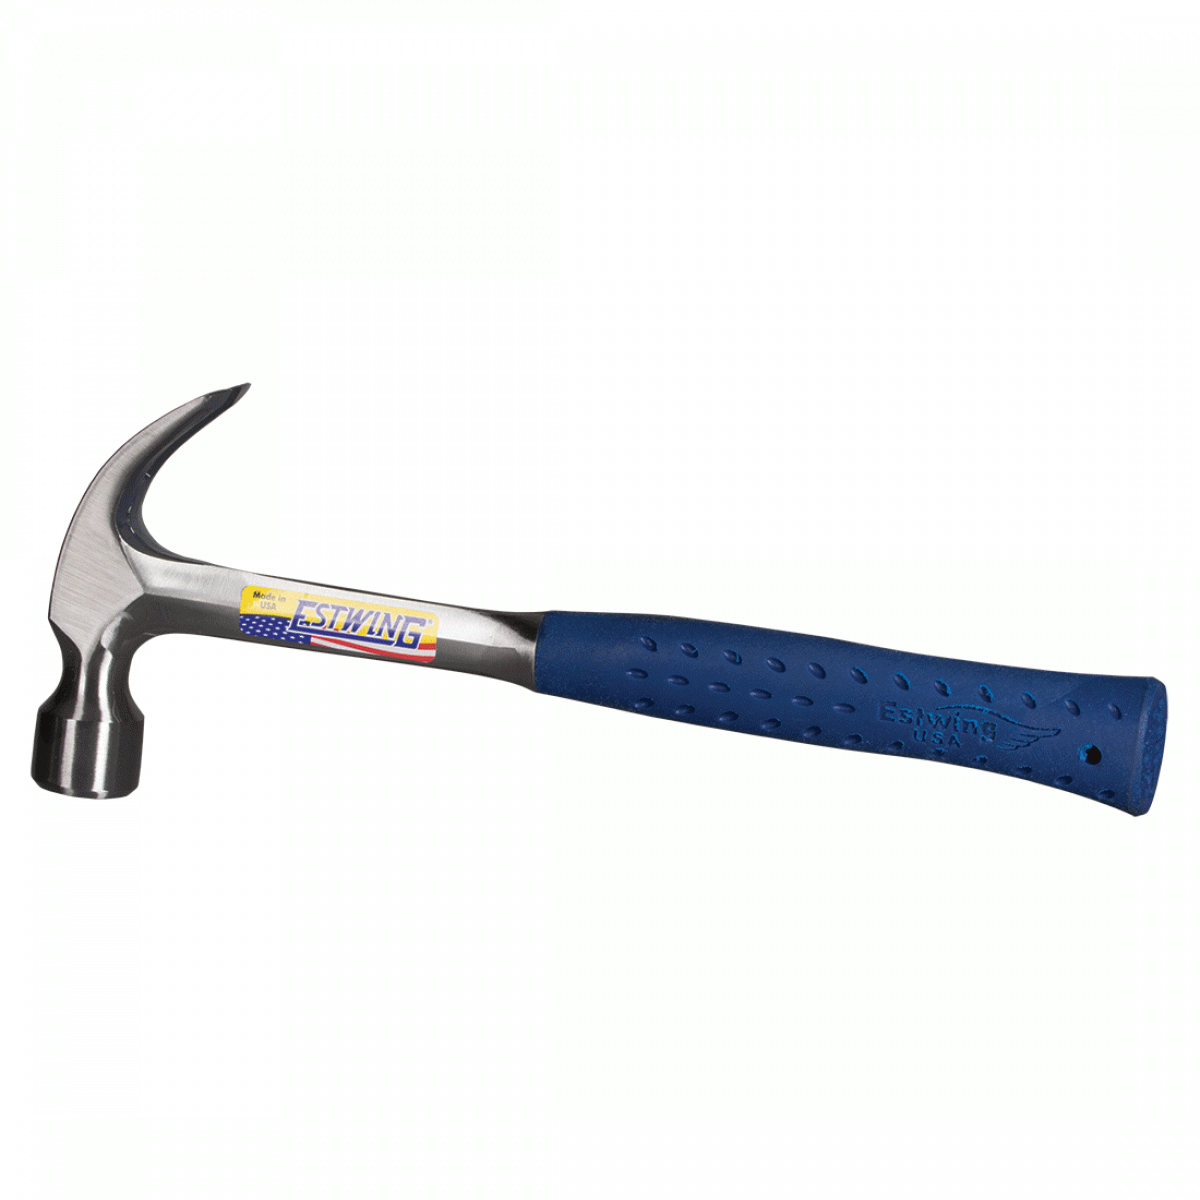 Estwing Steel Claw Hammer 22oz